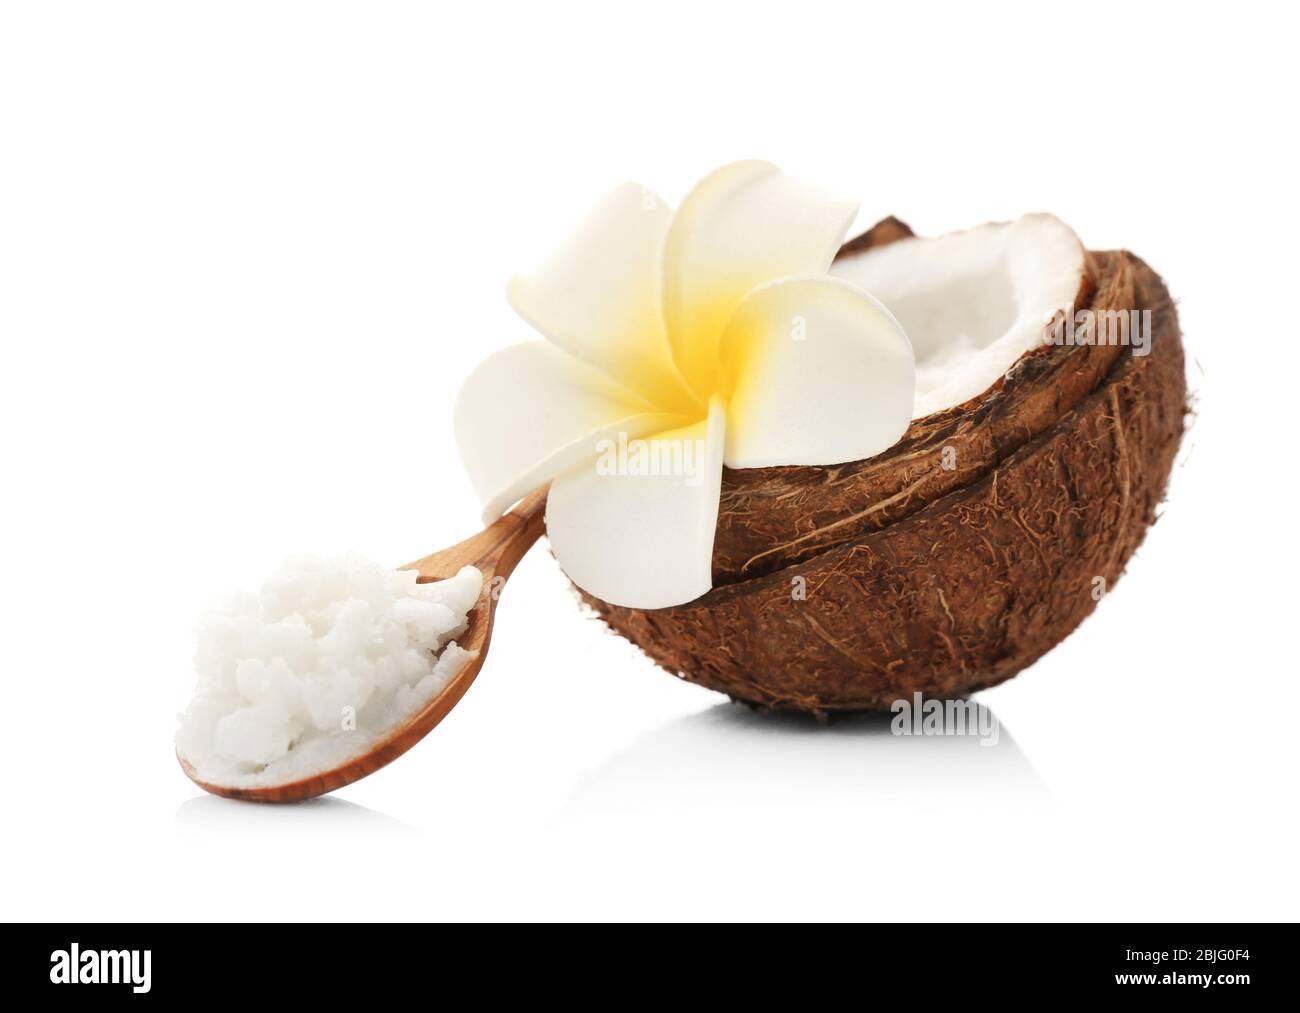 Composizione con burro di cocco in cucchiaio di legno e noce su fondo bianco Foto Stock